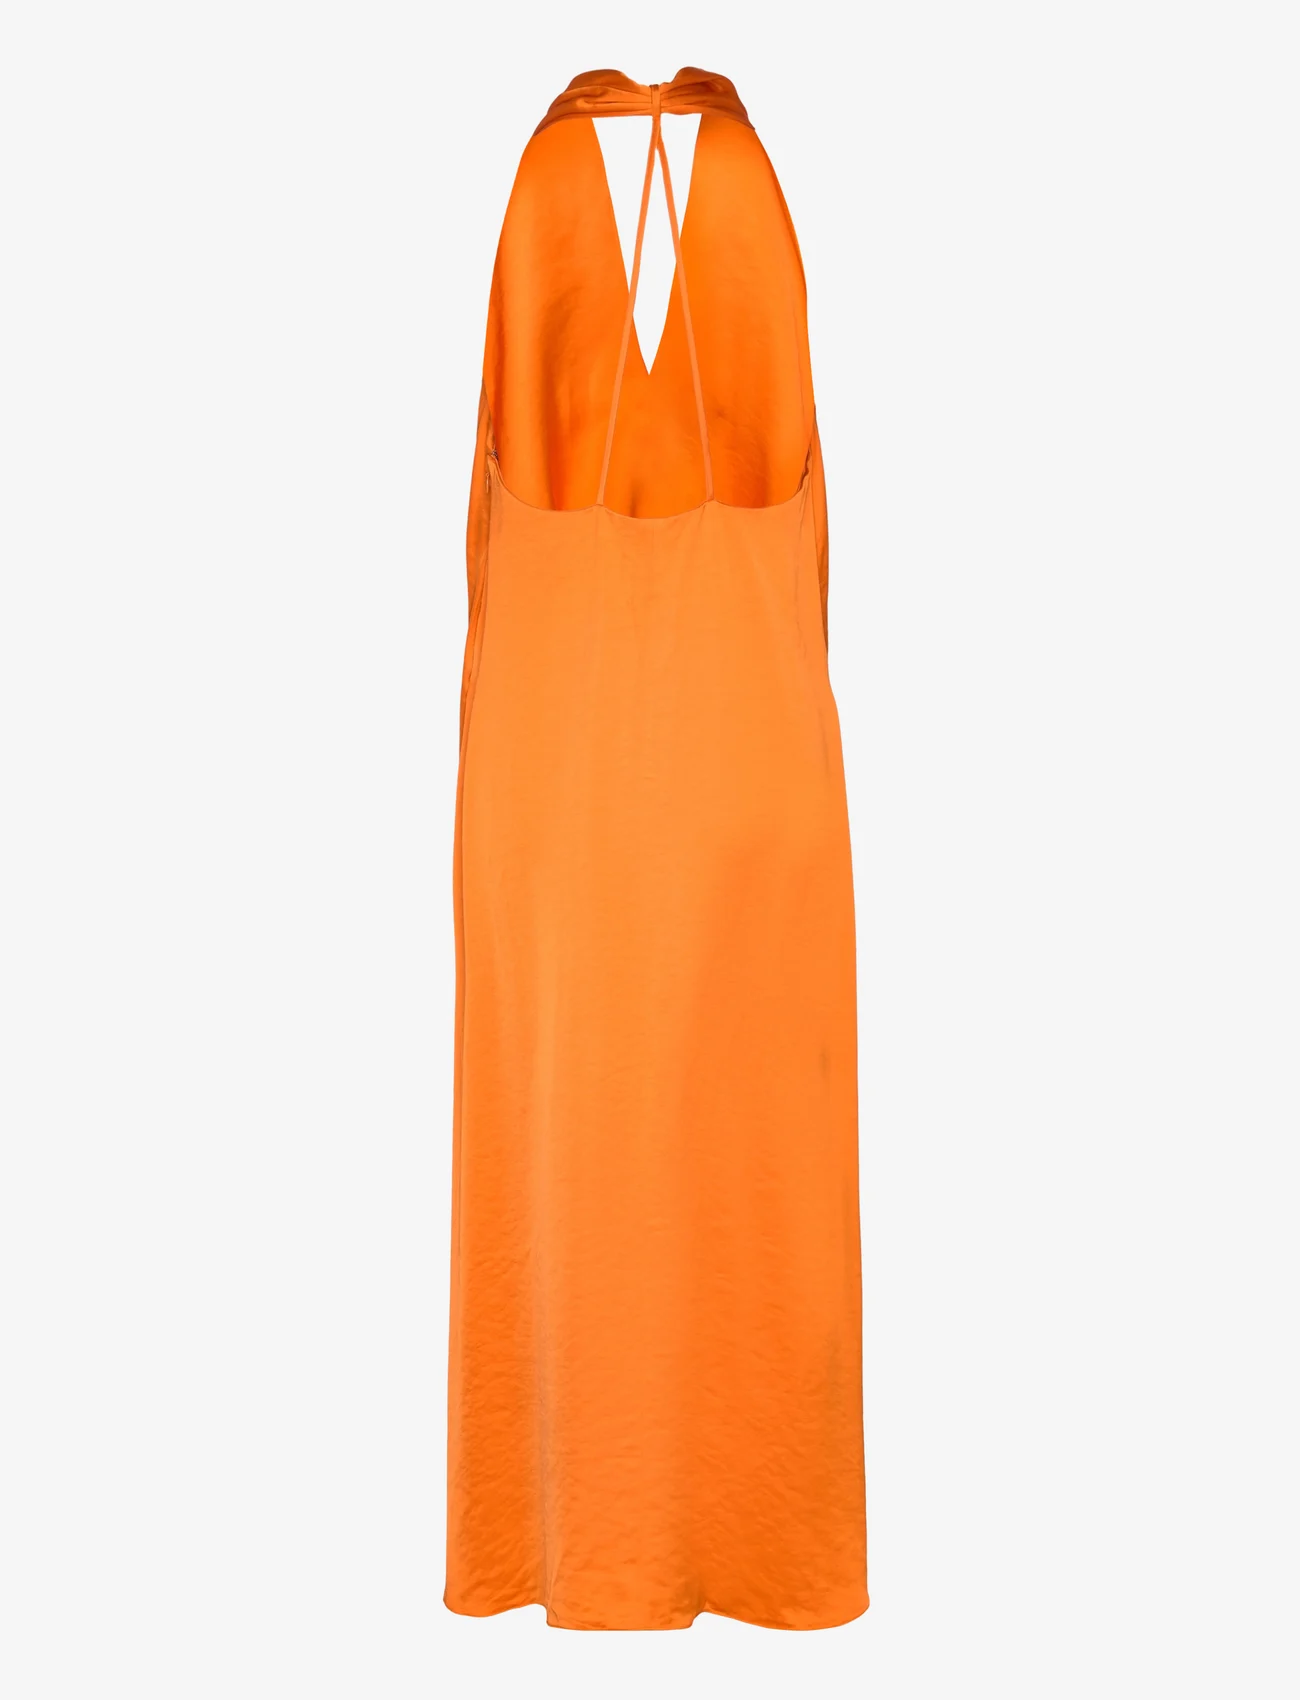 Samsøe Samsøe - Cille dress 14773 - midimekot - russet orange - 1